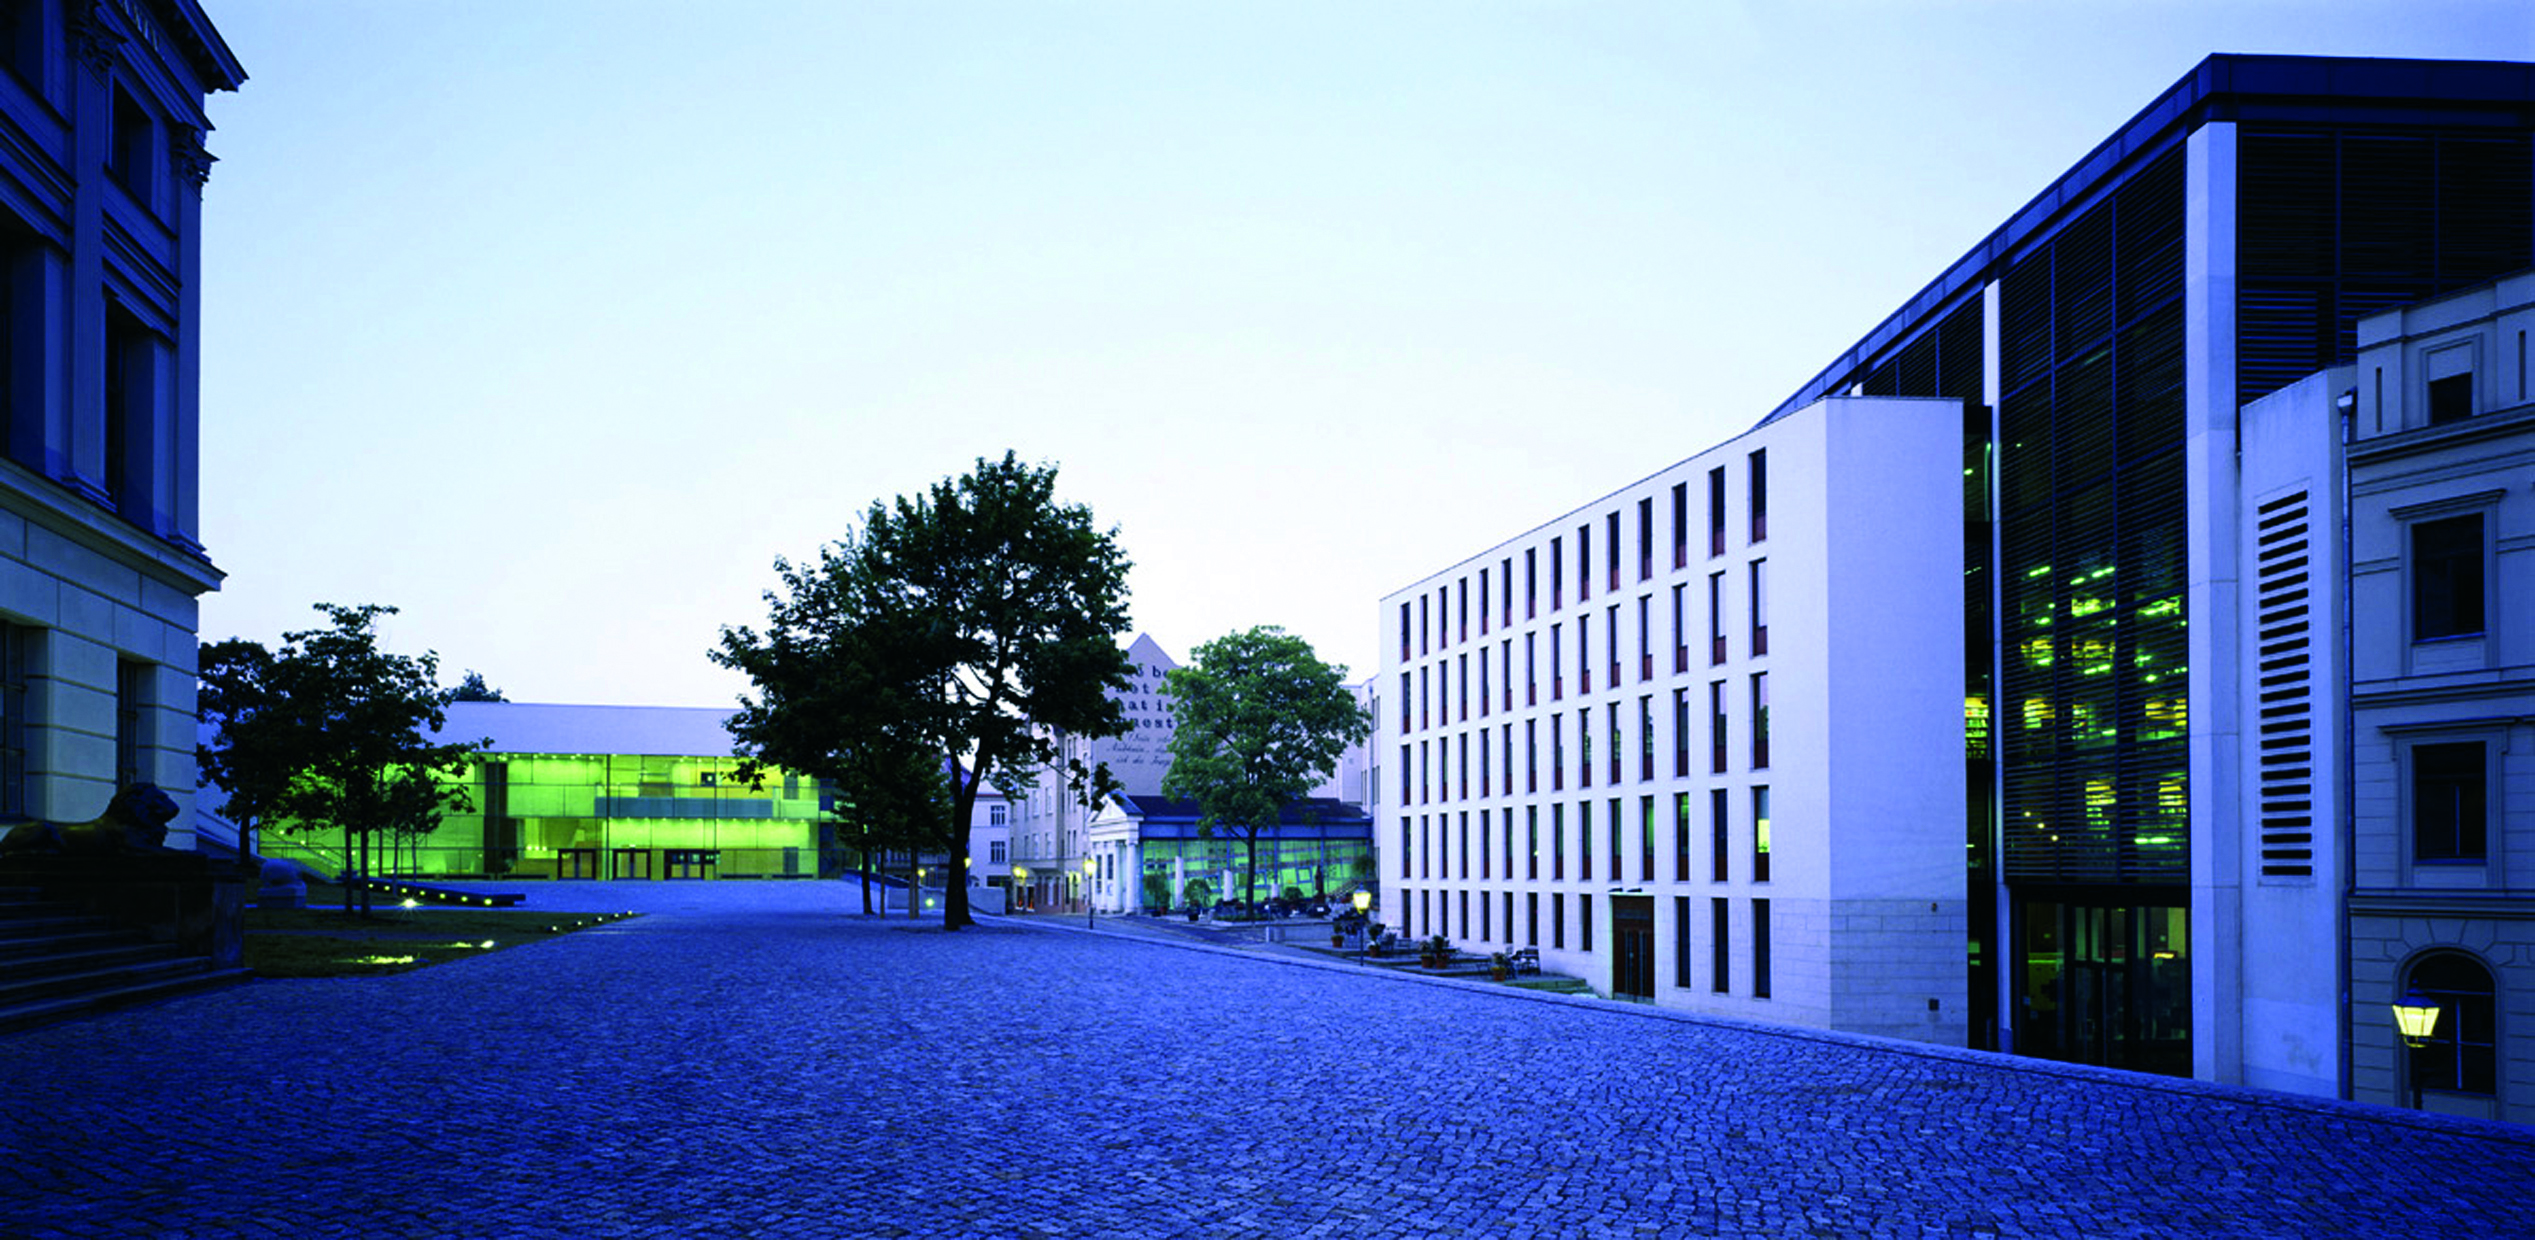 Ensemble Audimax, Campus und Juridicum der Martin-Luther-Universität Halle Wittenberg